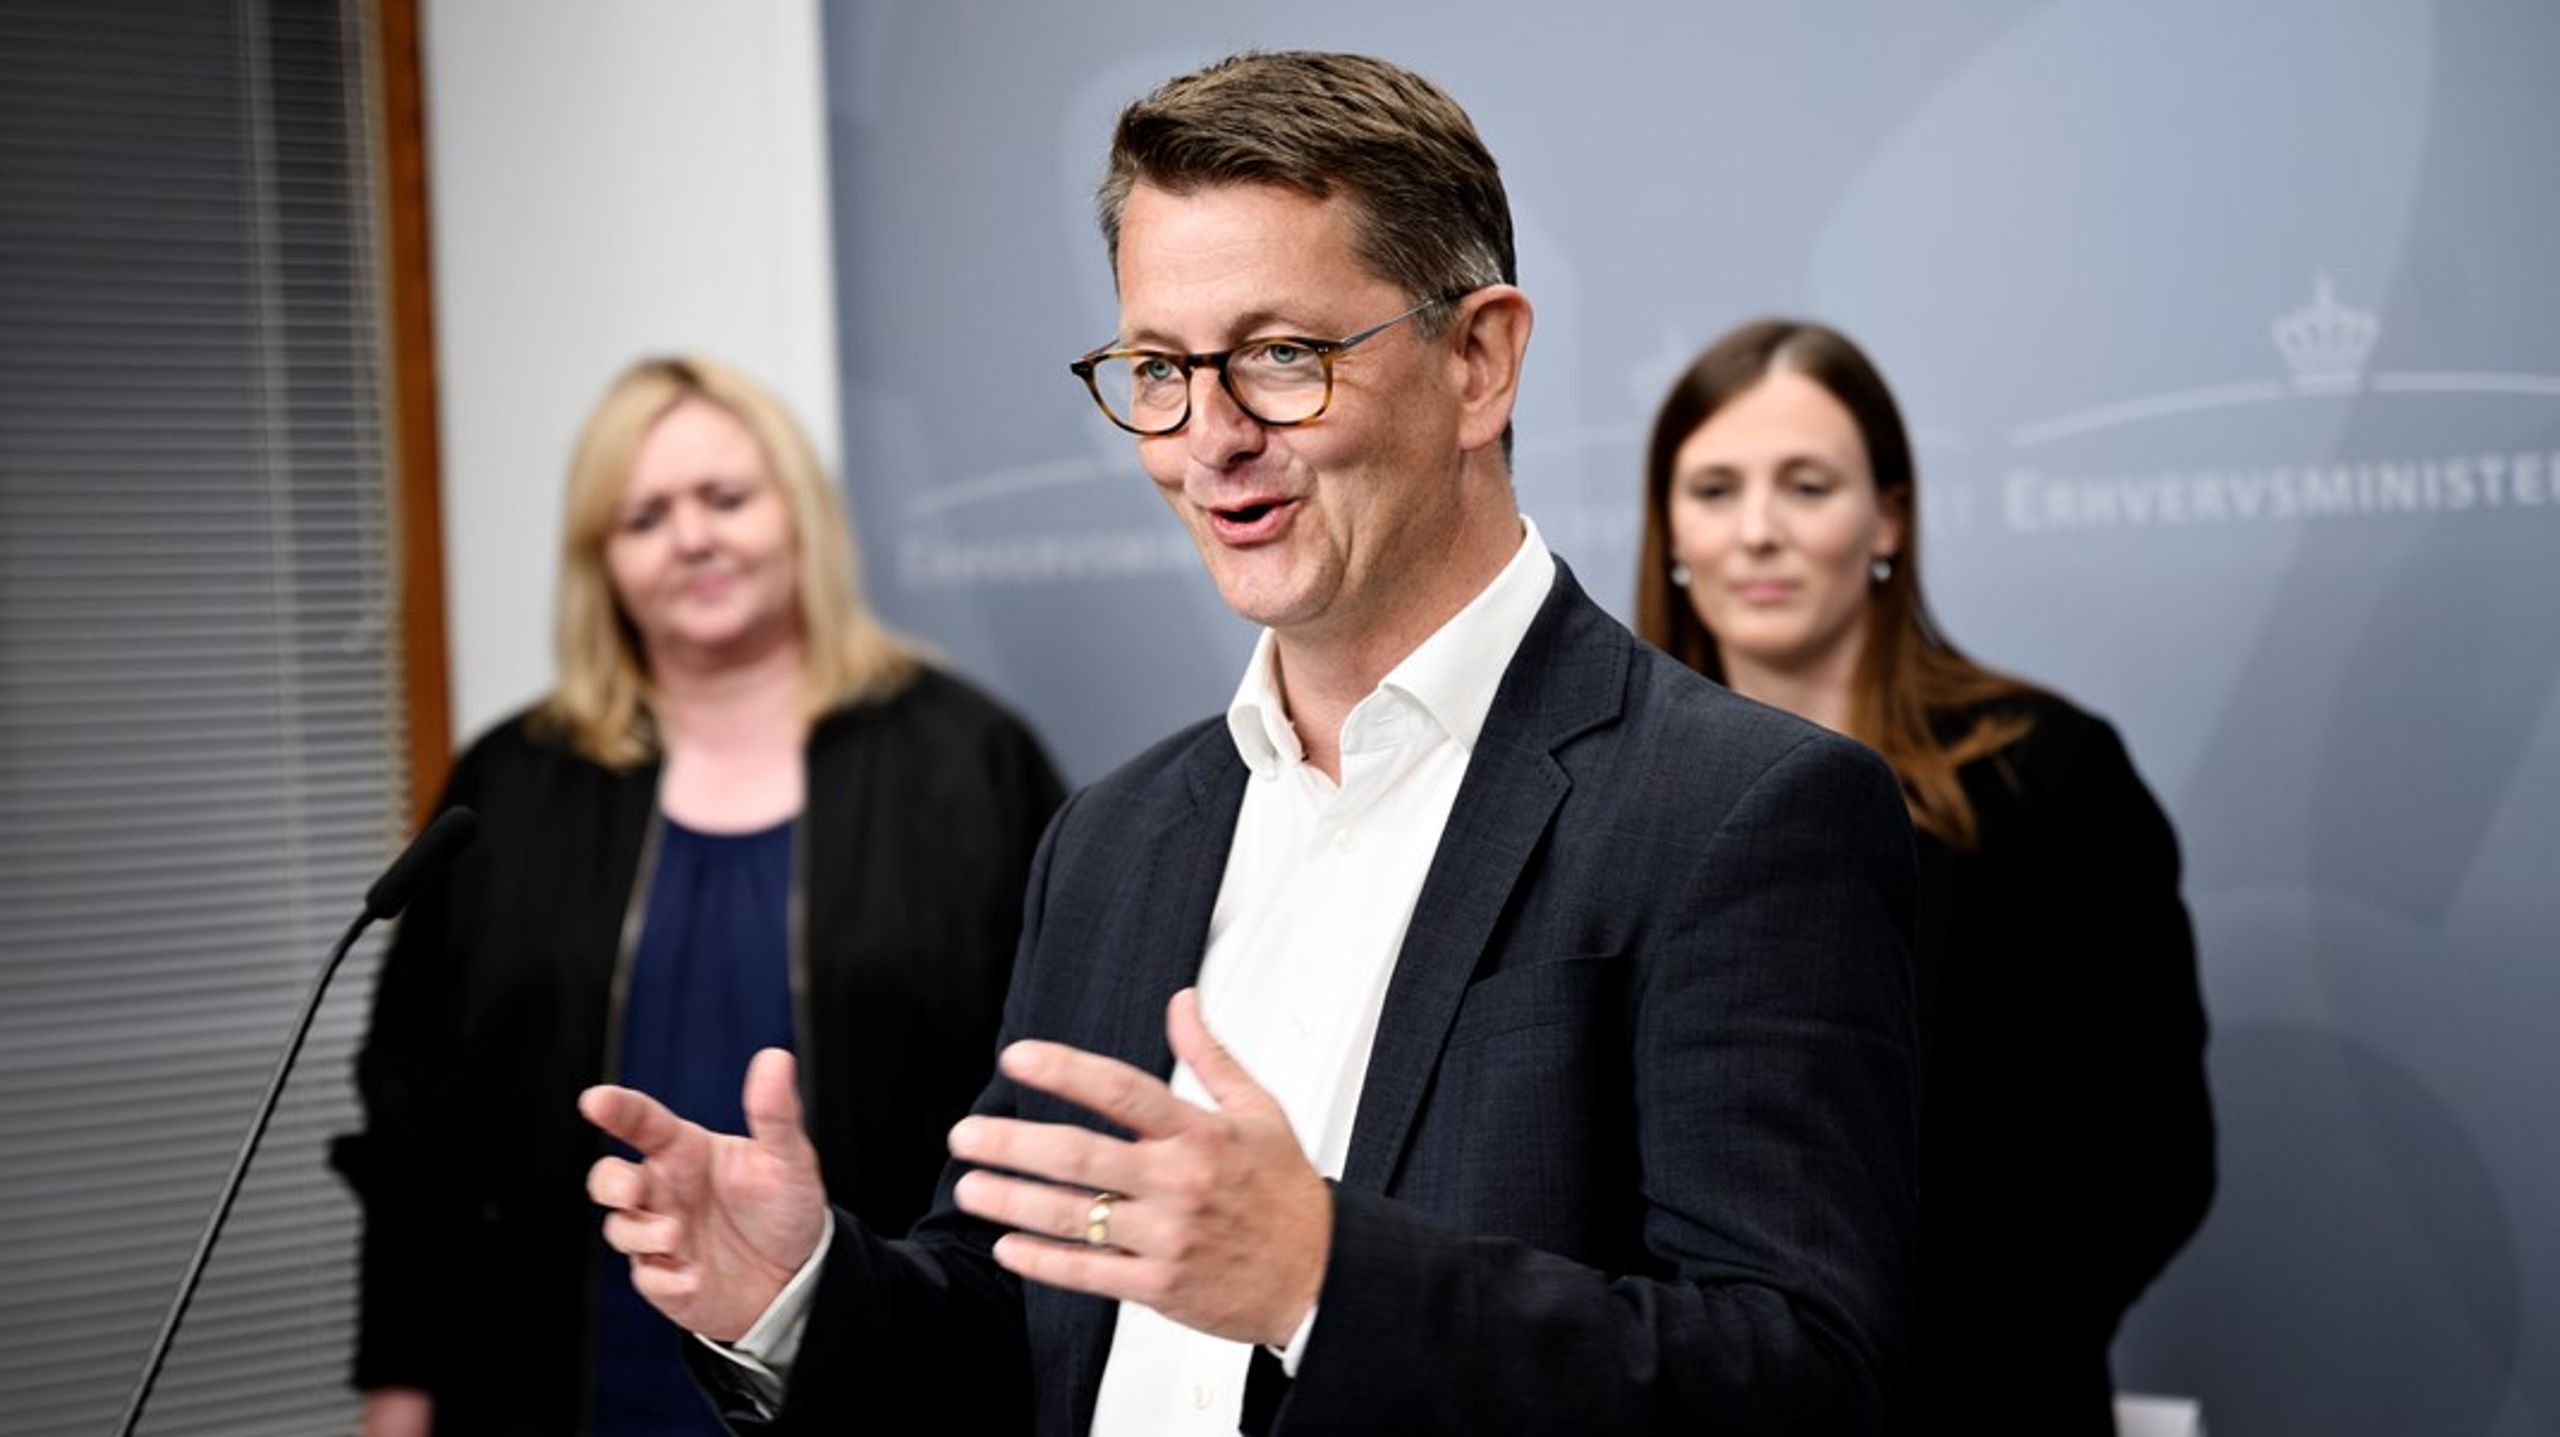 Torsten Schack Pedersen (V) og Mona Juul (K) i baggrunden under et pressemøde tilbage i 2020.